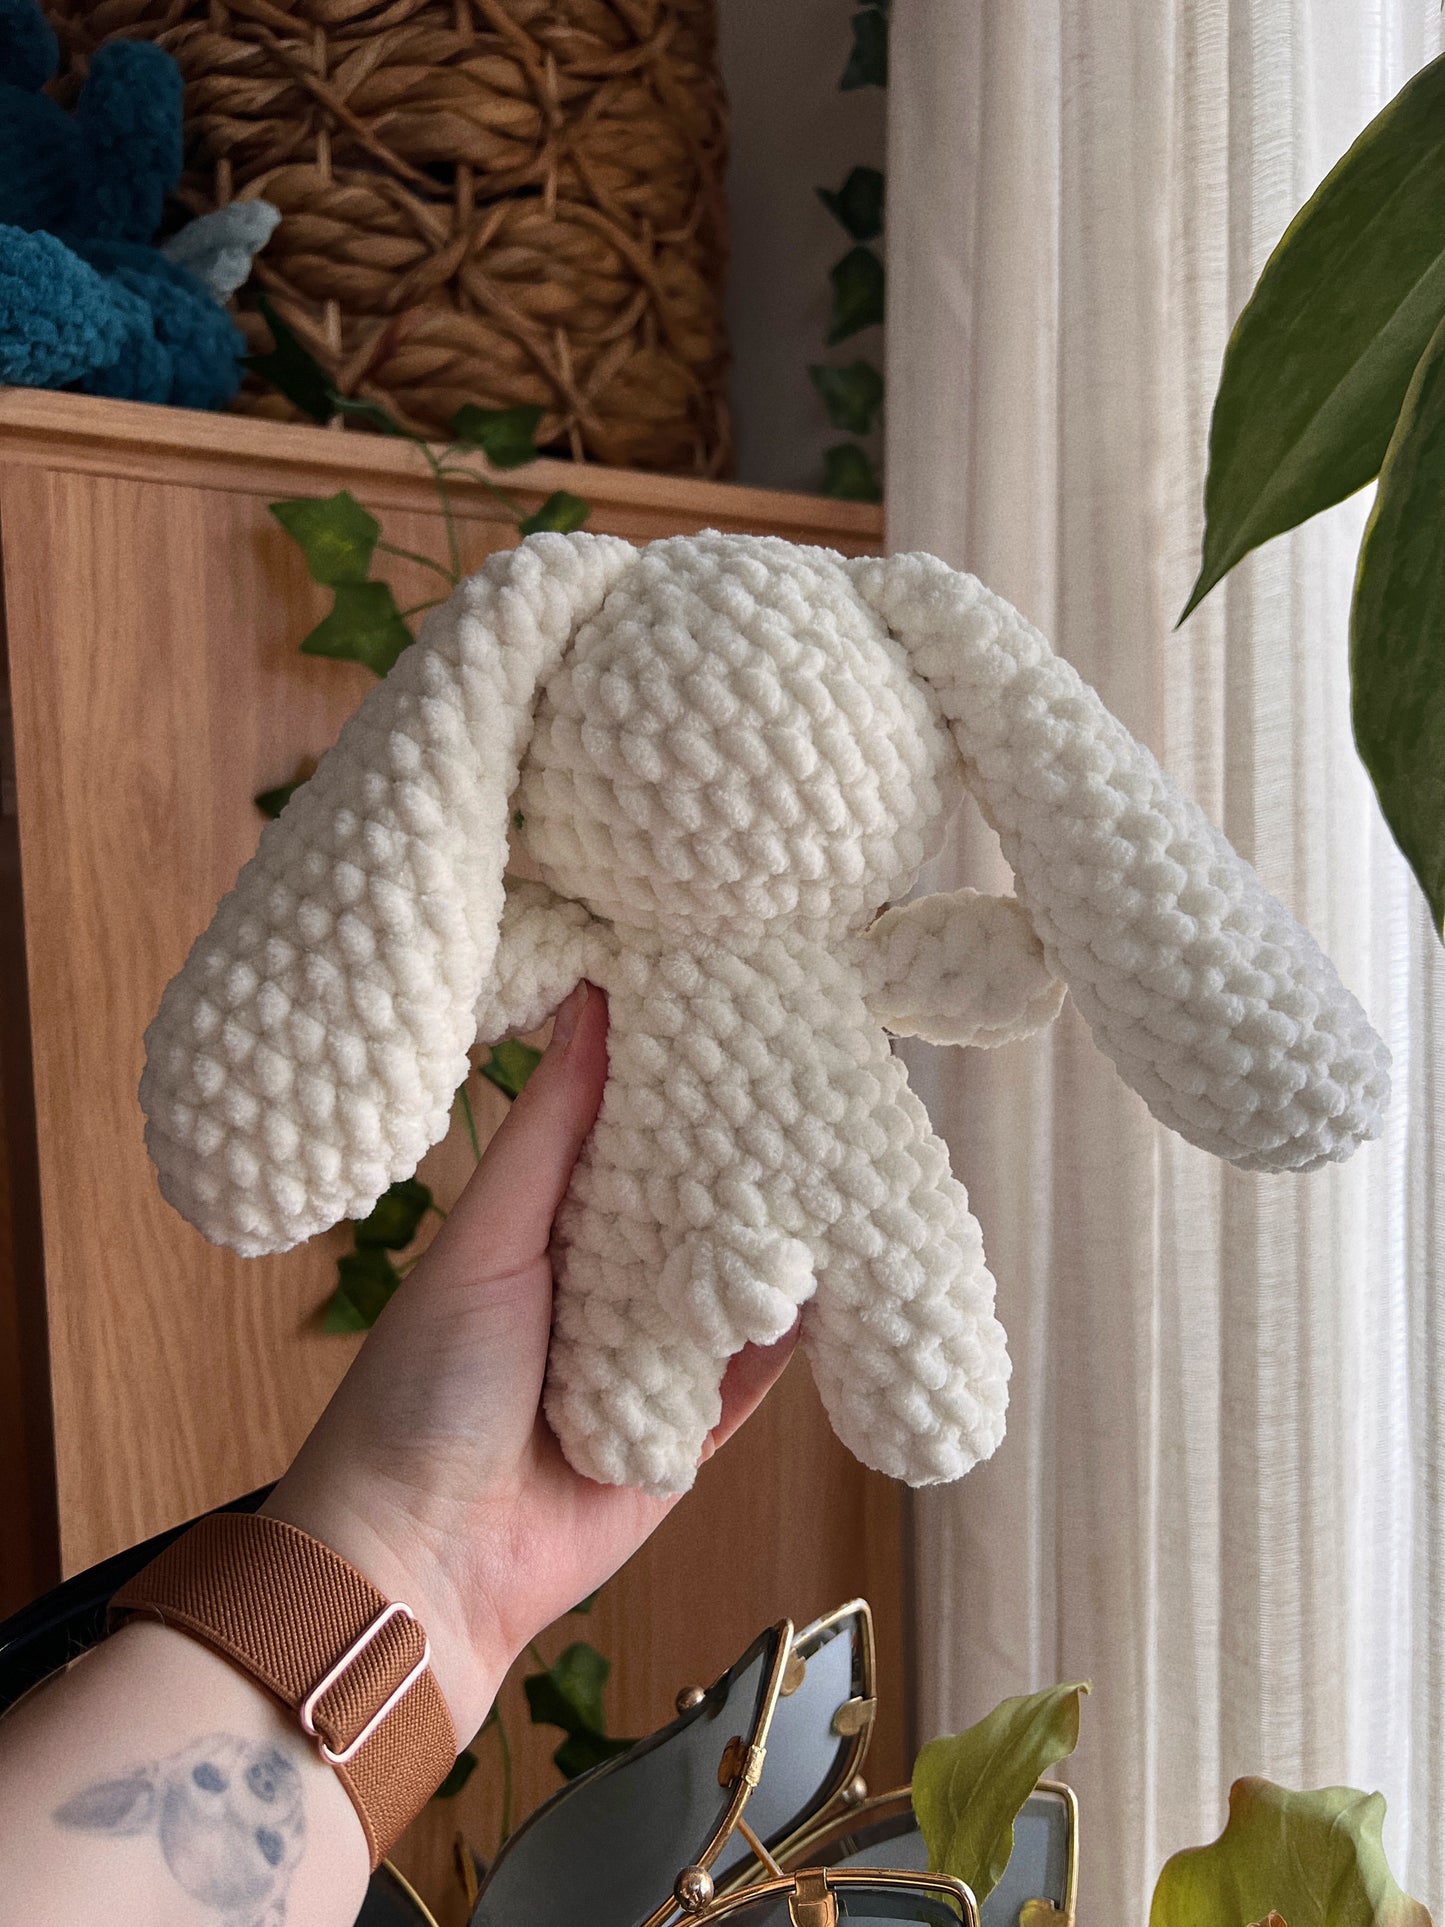 Bunny Stuffed Plushie